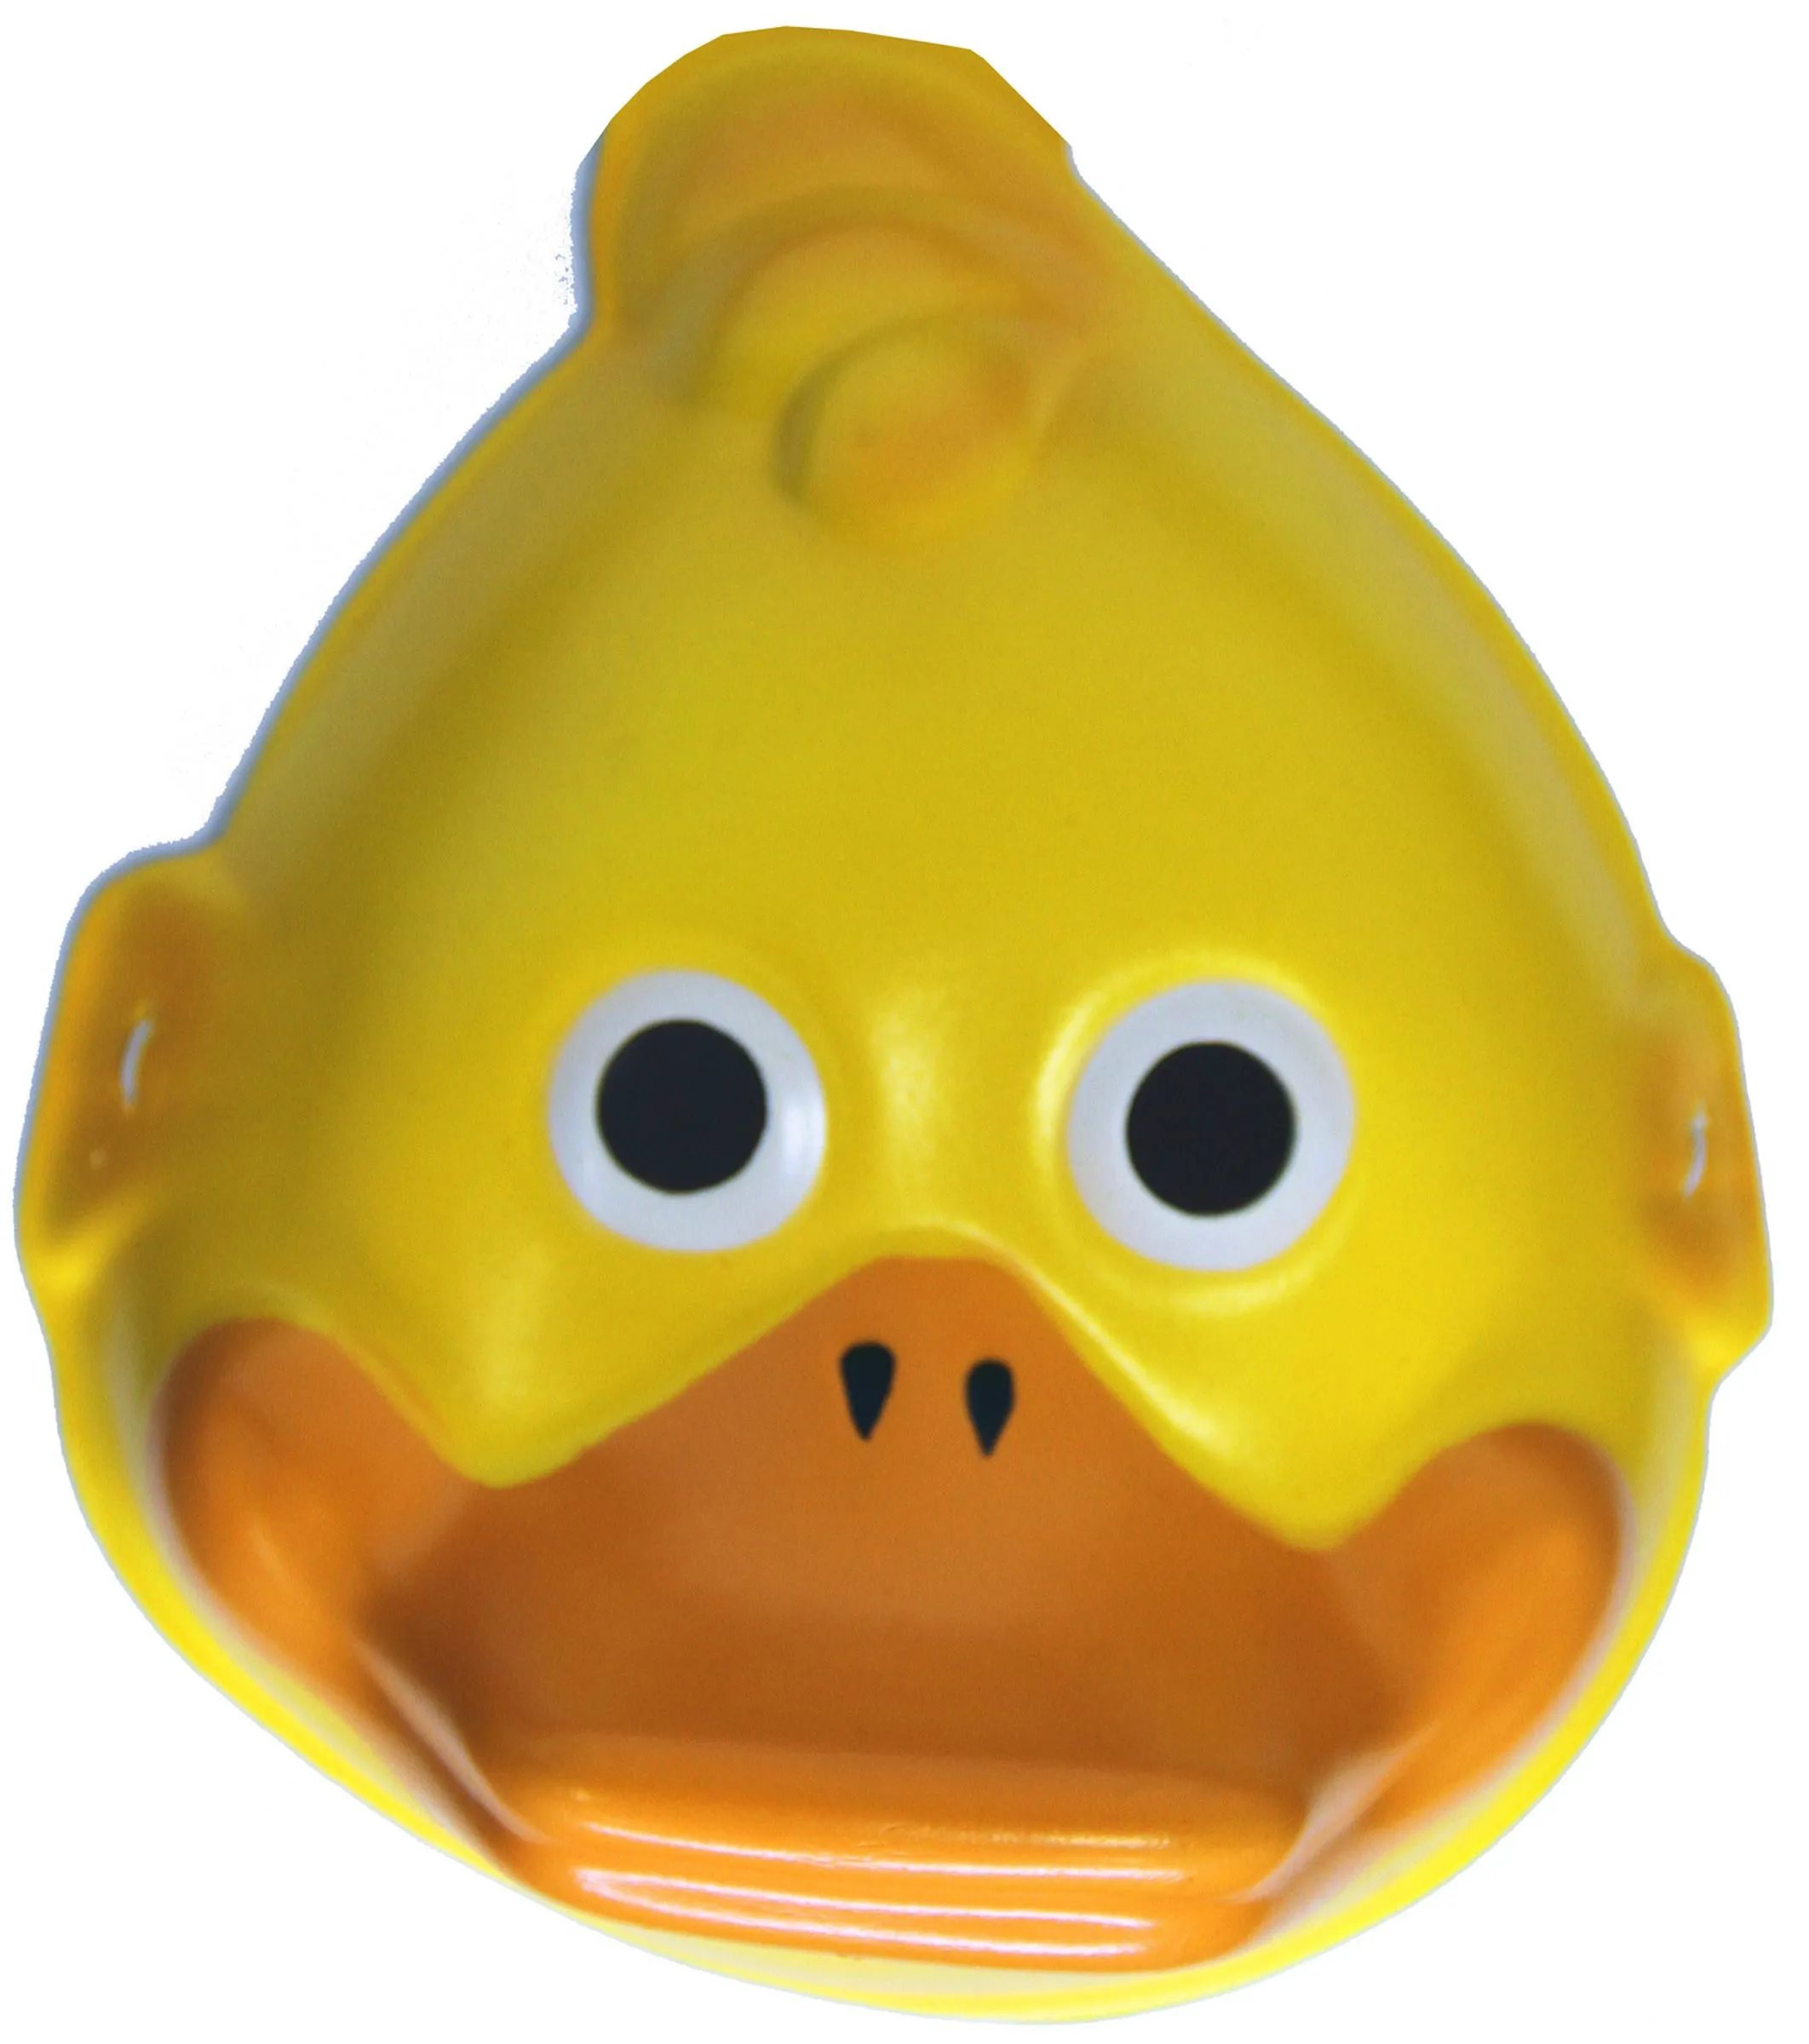 Mascara de pato - Imagui